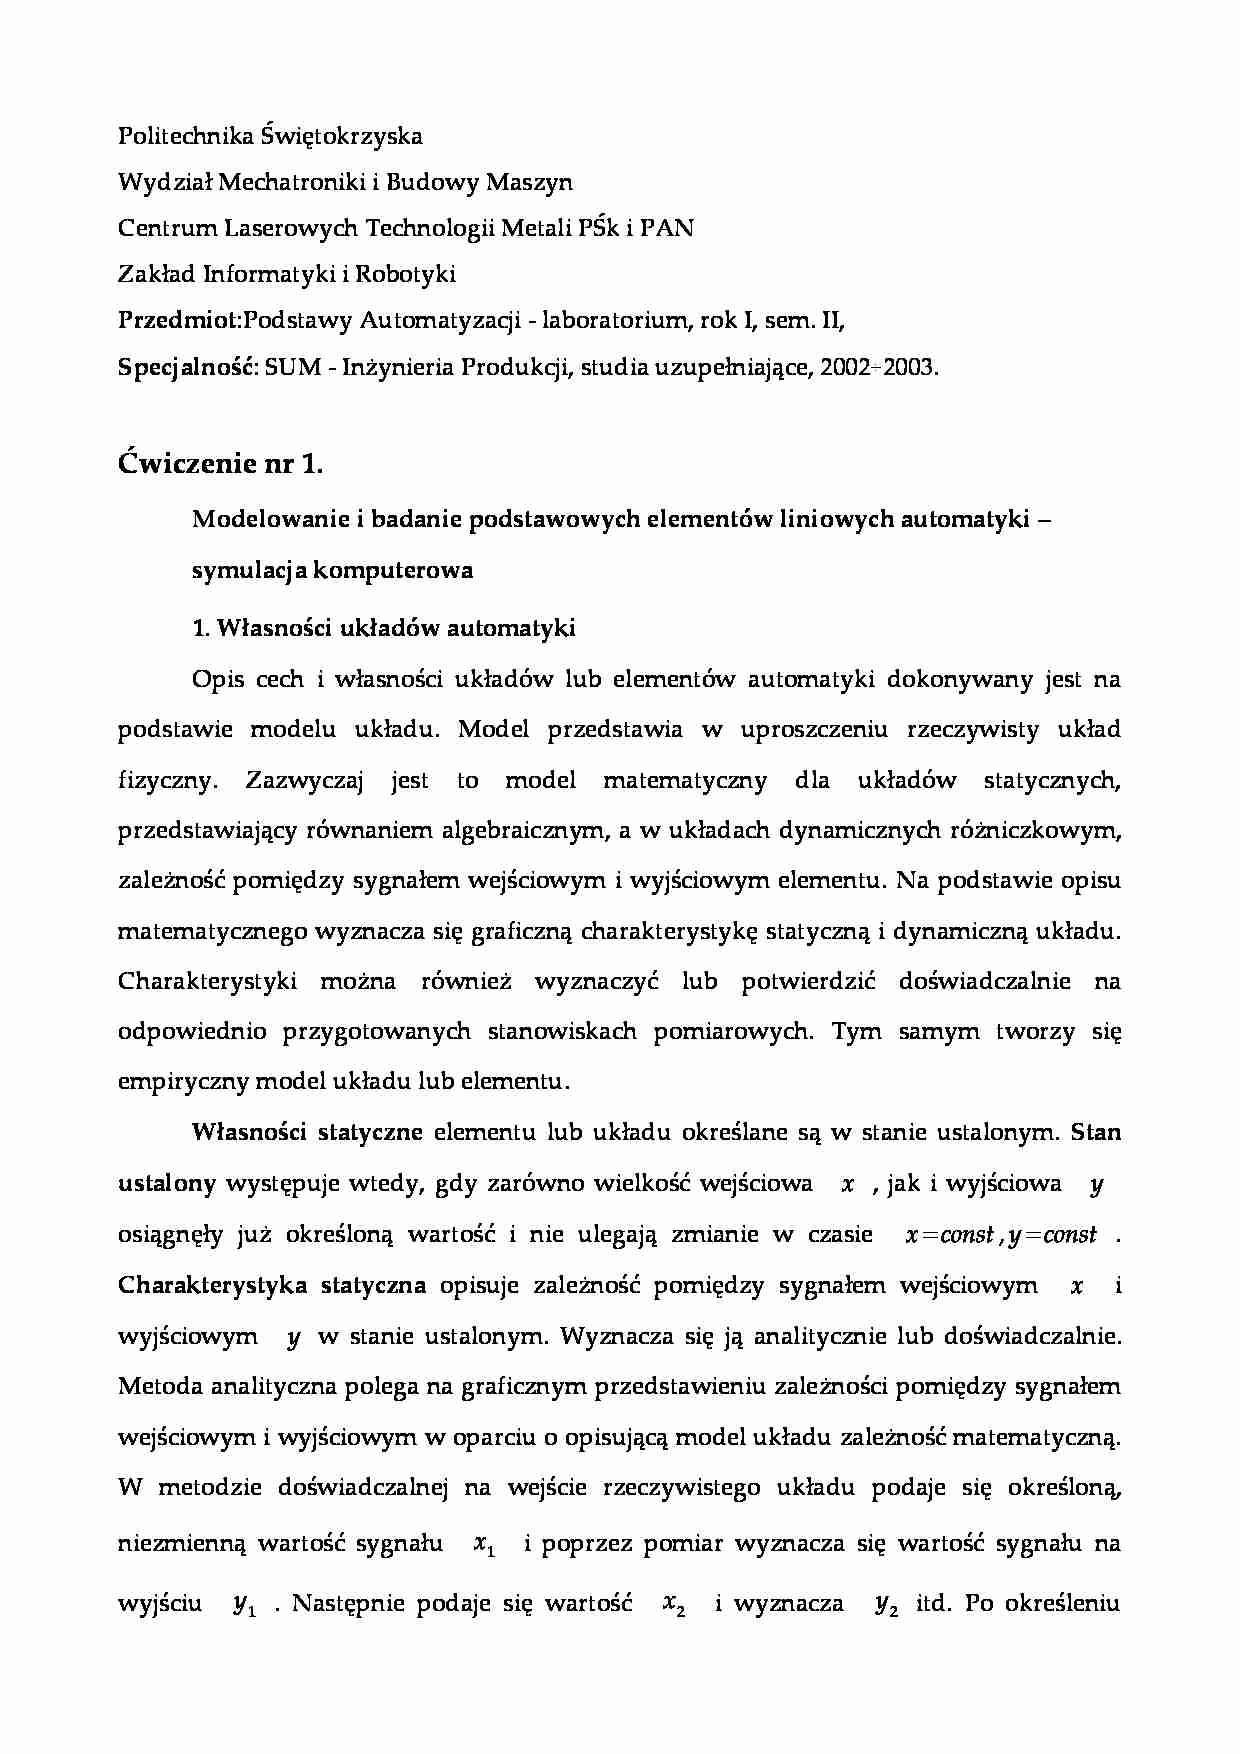 Modelowanie i badanie podstawowych elementów liniowych automatyki - symulacja komputerowa-sprawozdanie z laboratorium - strona 1